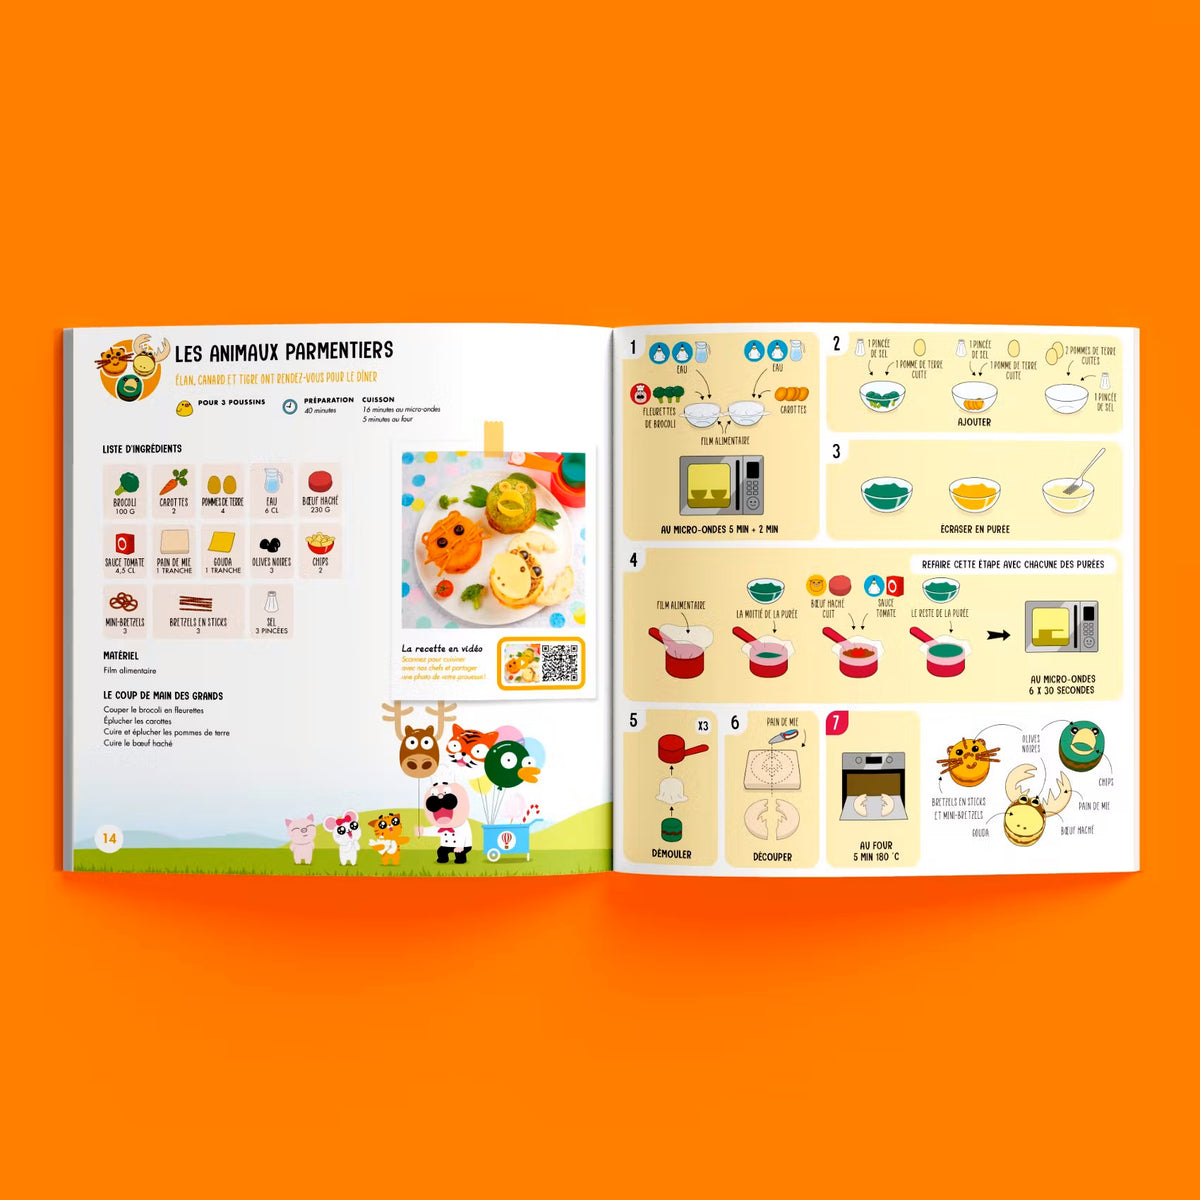 Chefclub Kids - Coffret pour enfant : Livre de Cuisine et Tasses à mesurer  - On s'amuse en cuisine